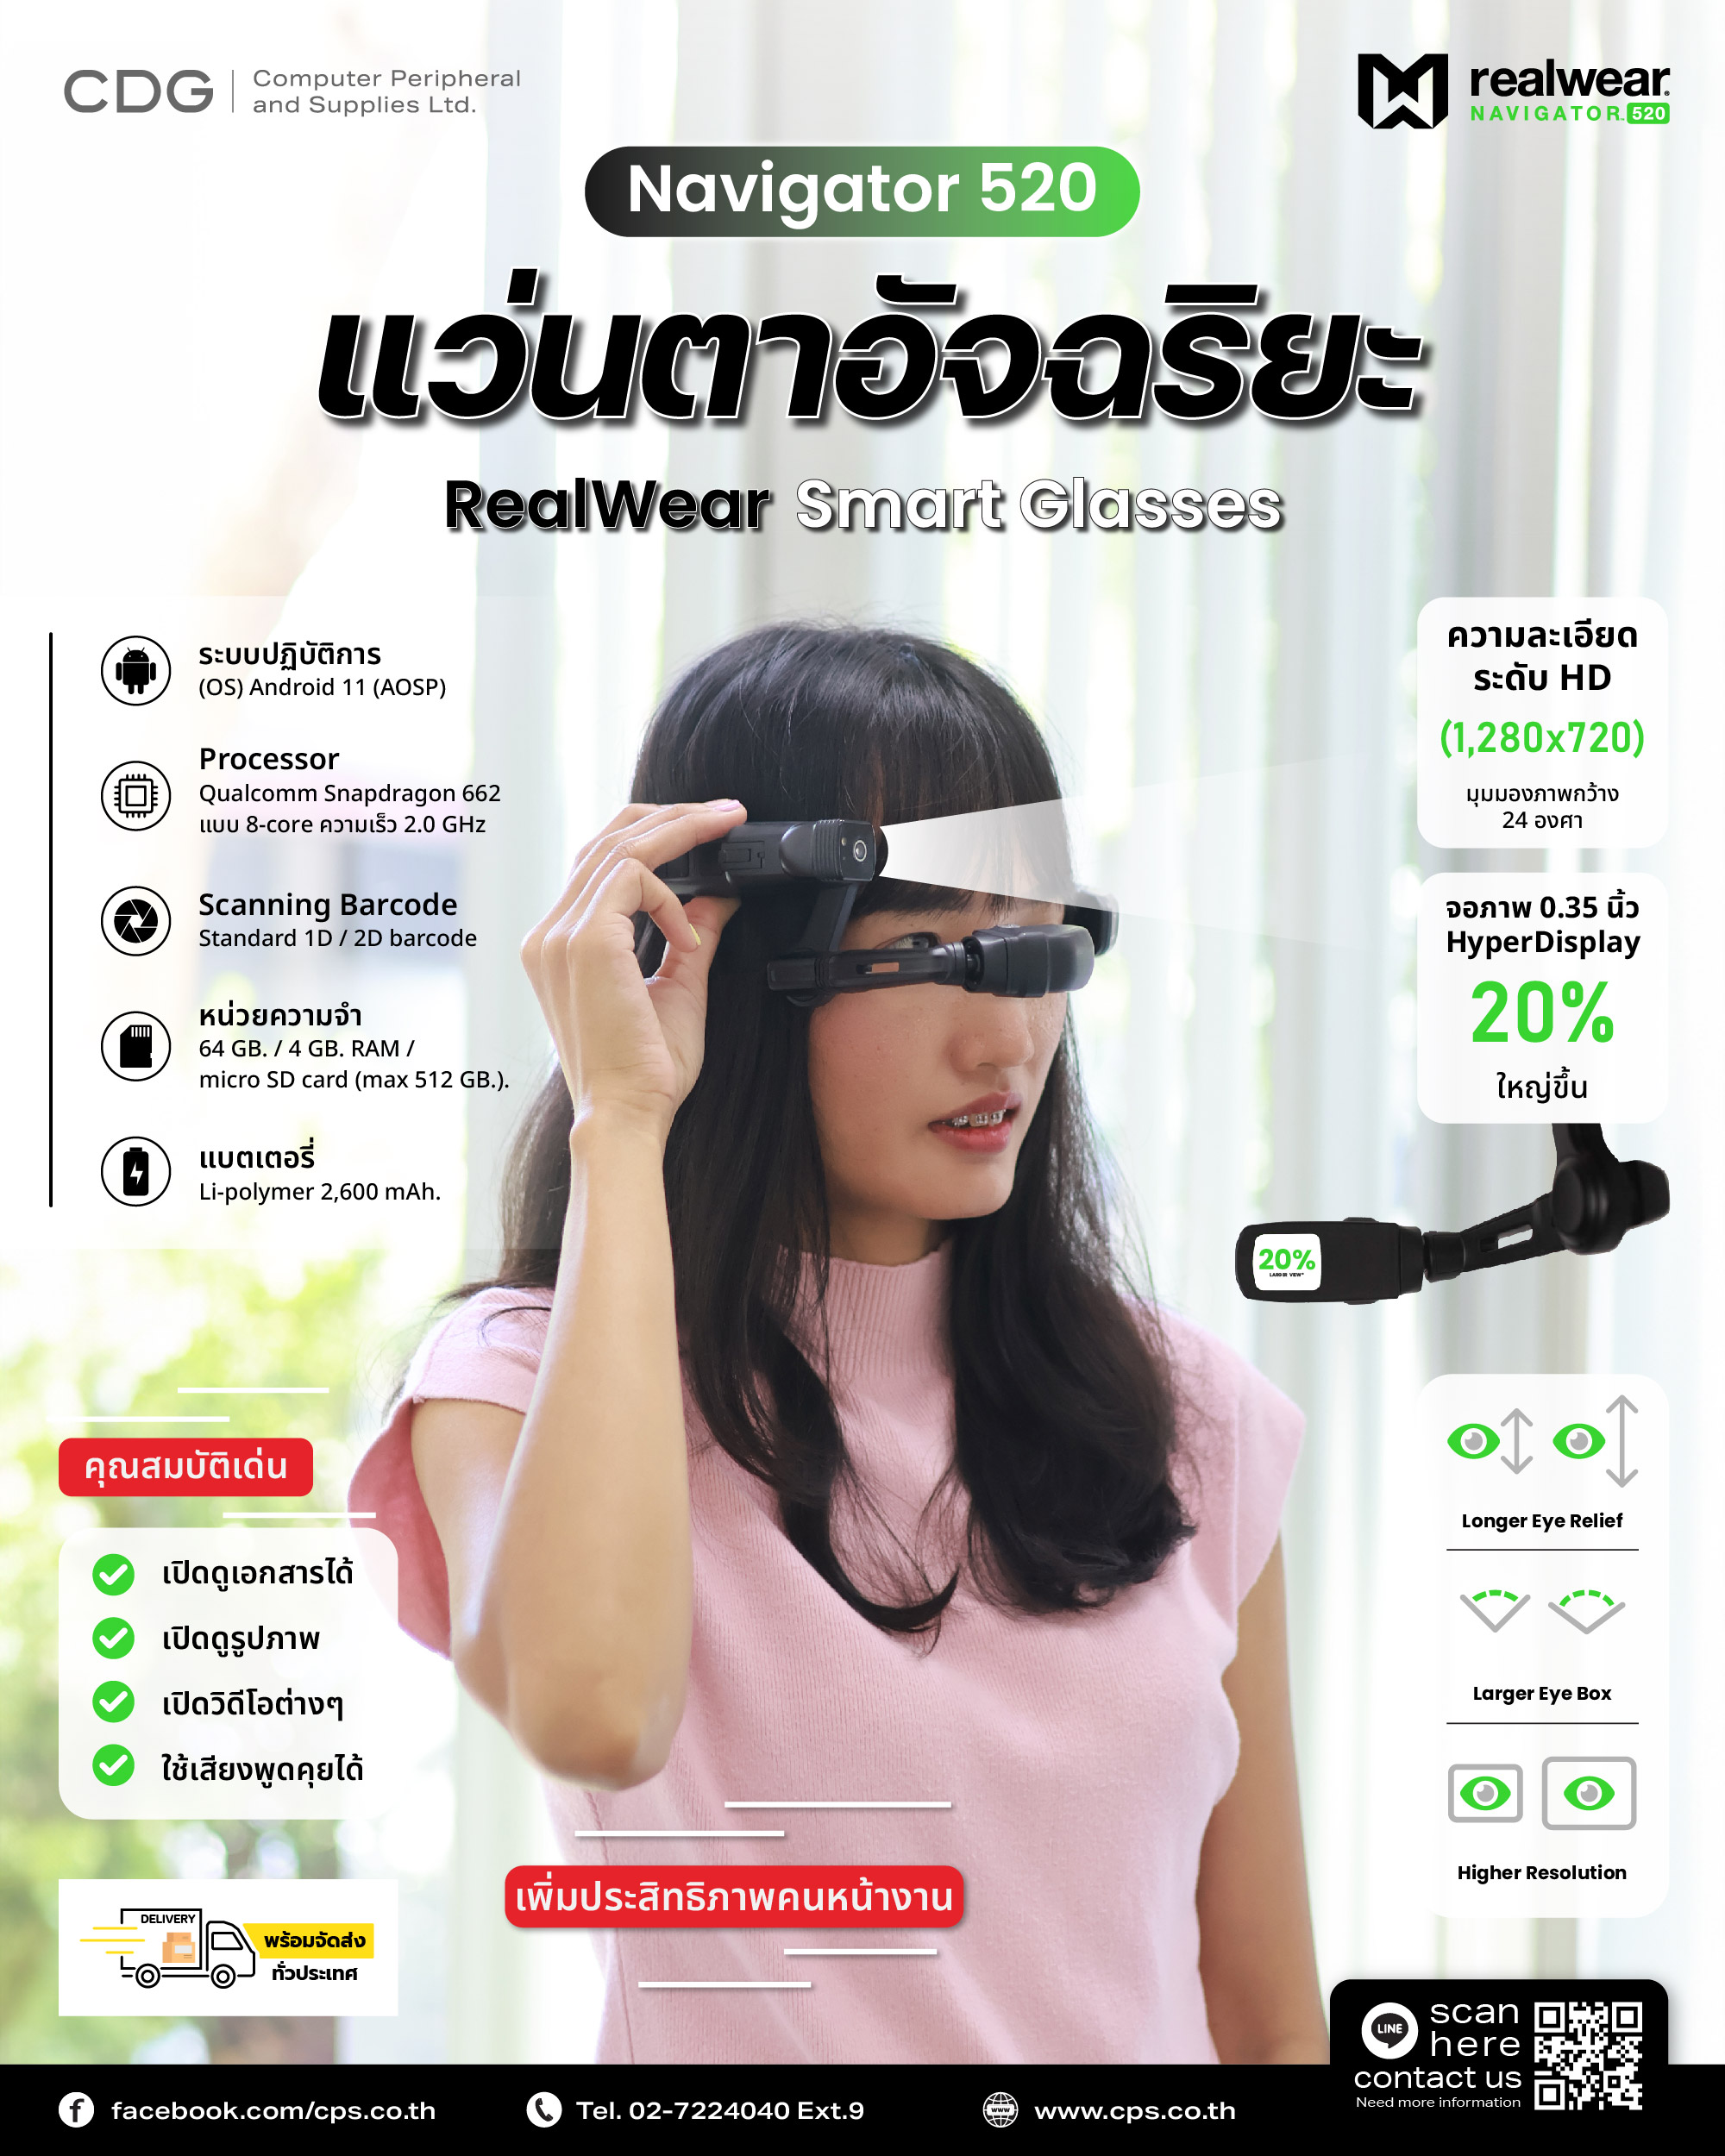 RealWear Navigator 520 Smart Glasses